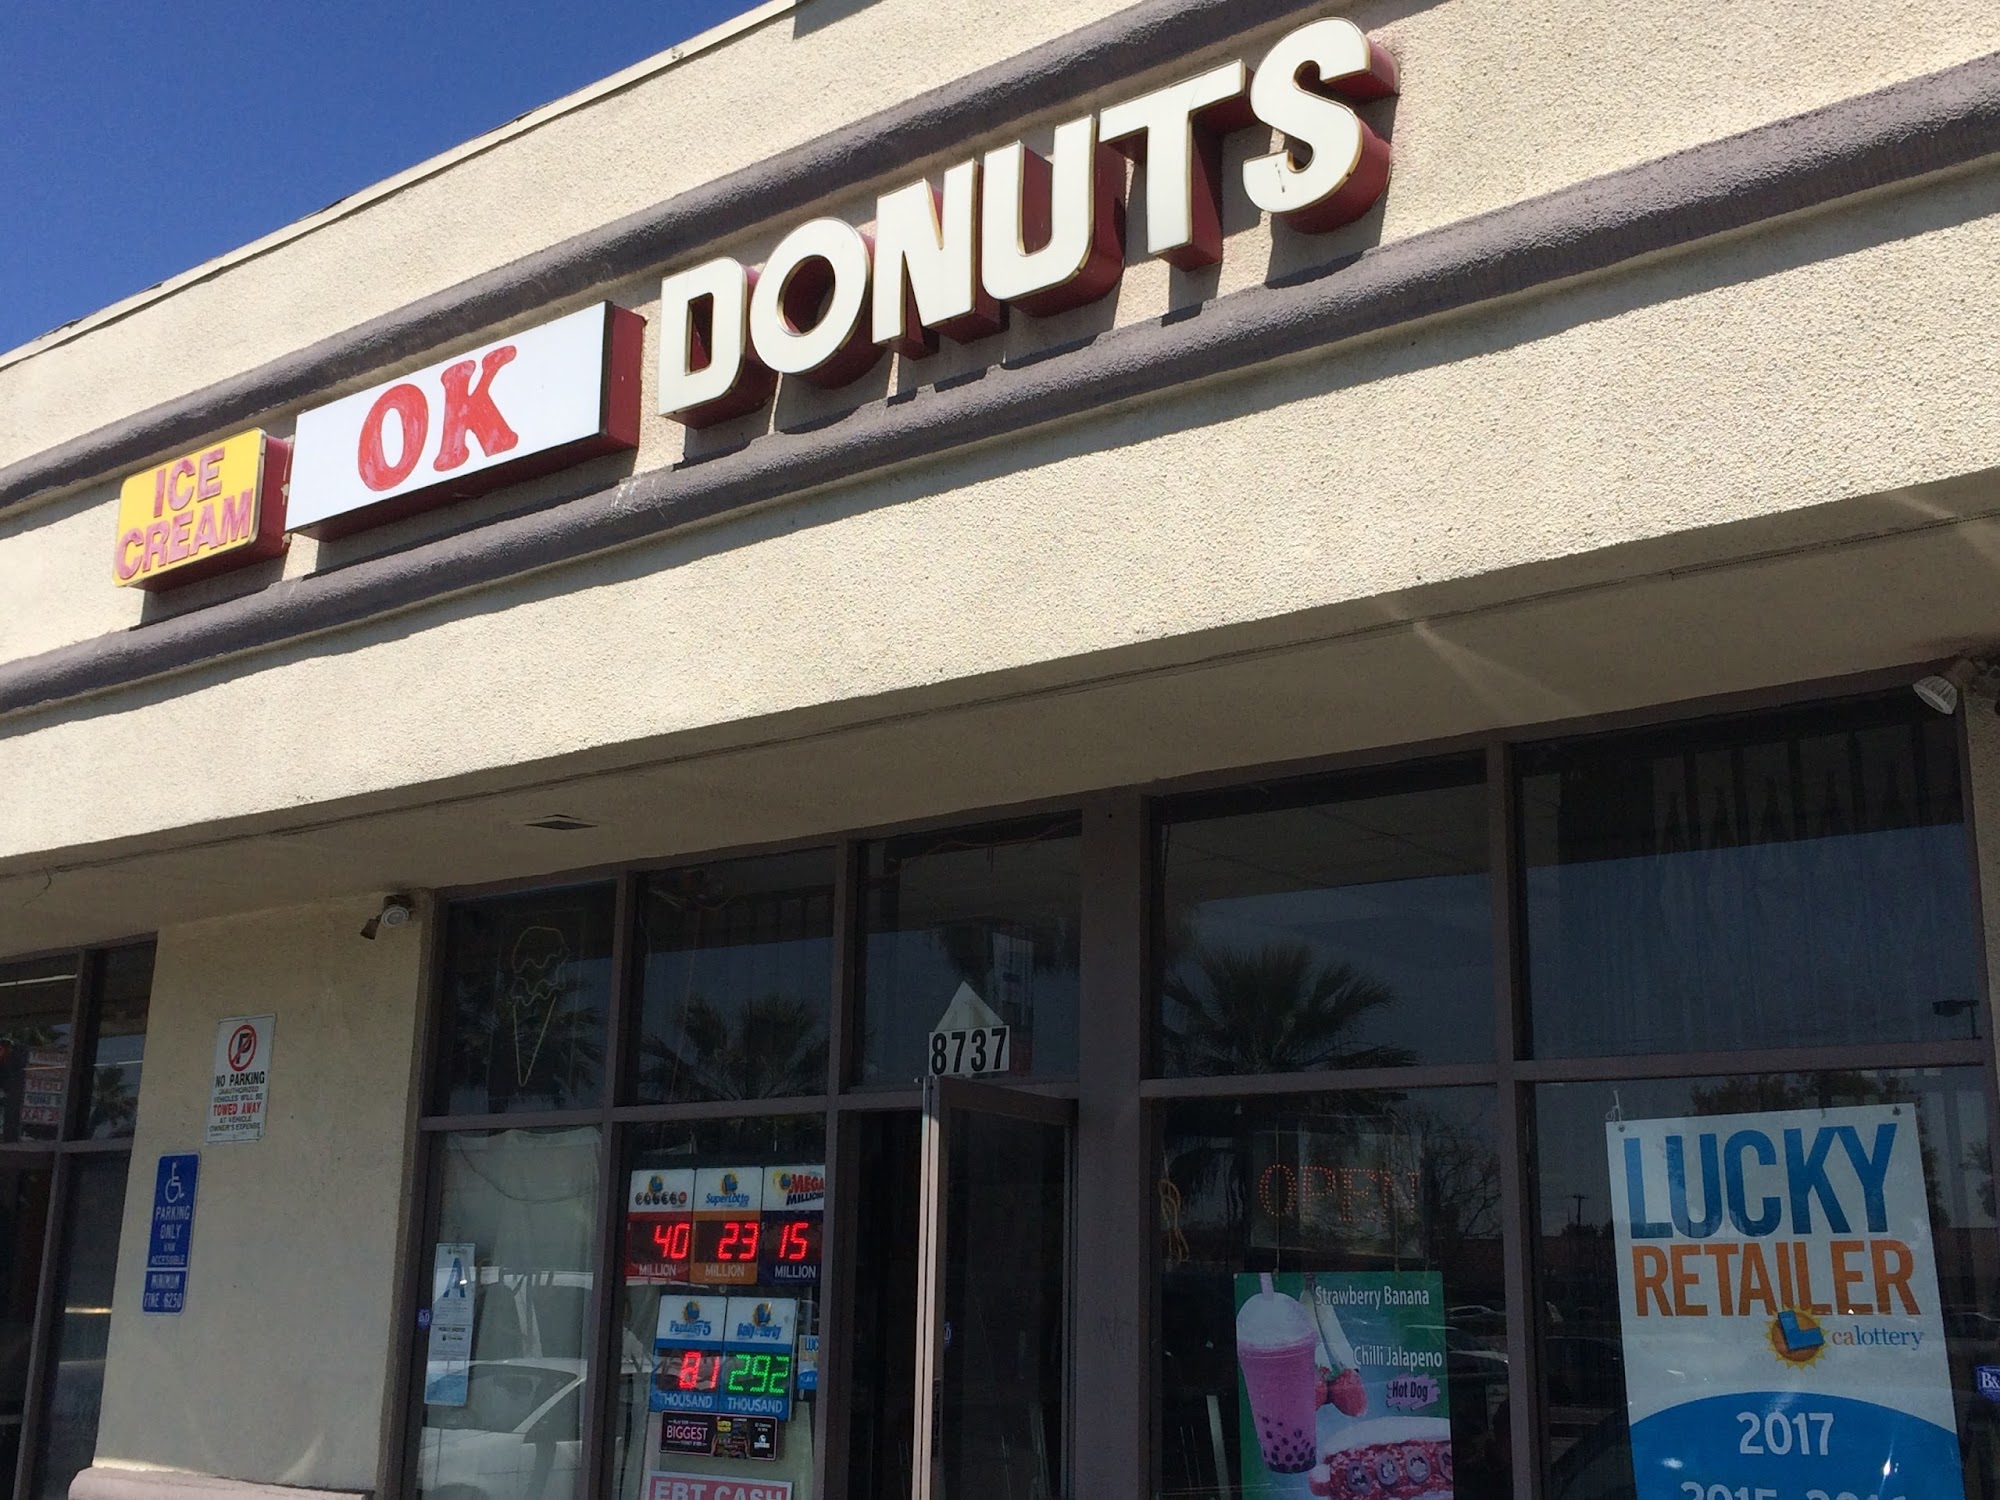 O K Donut's